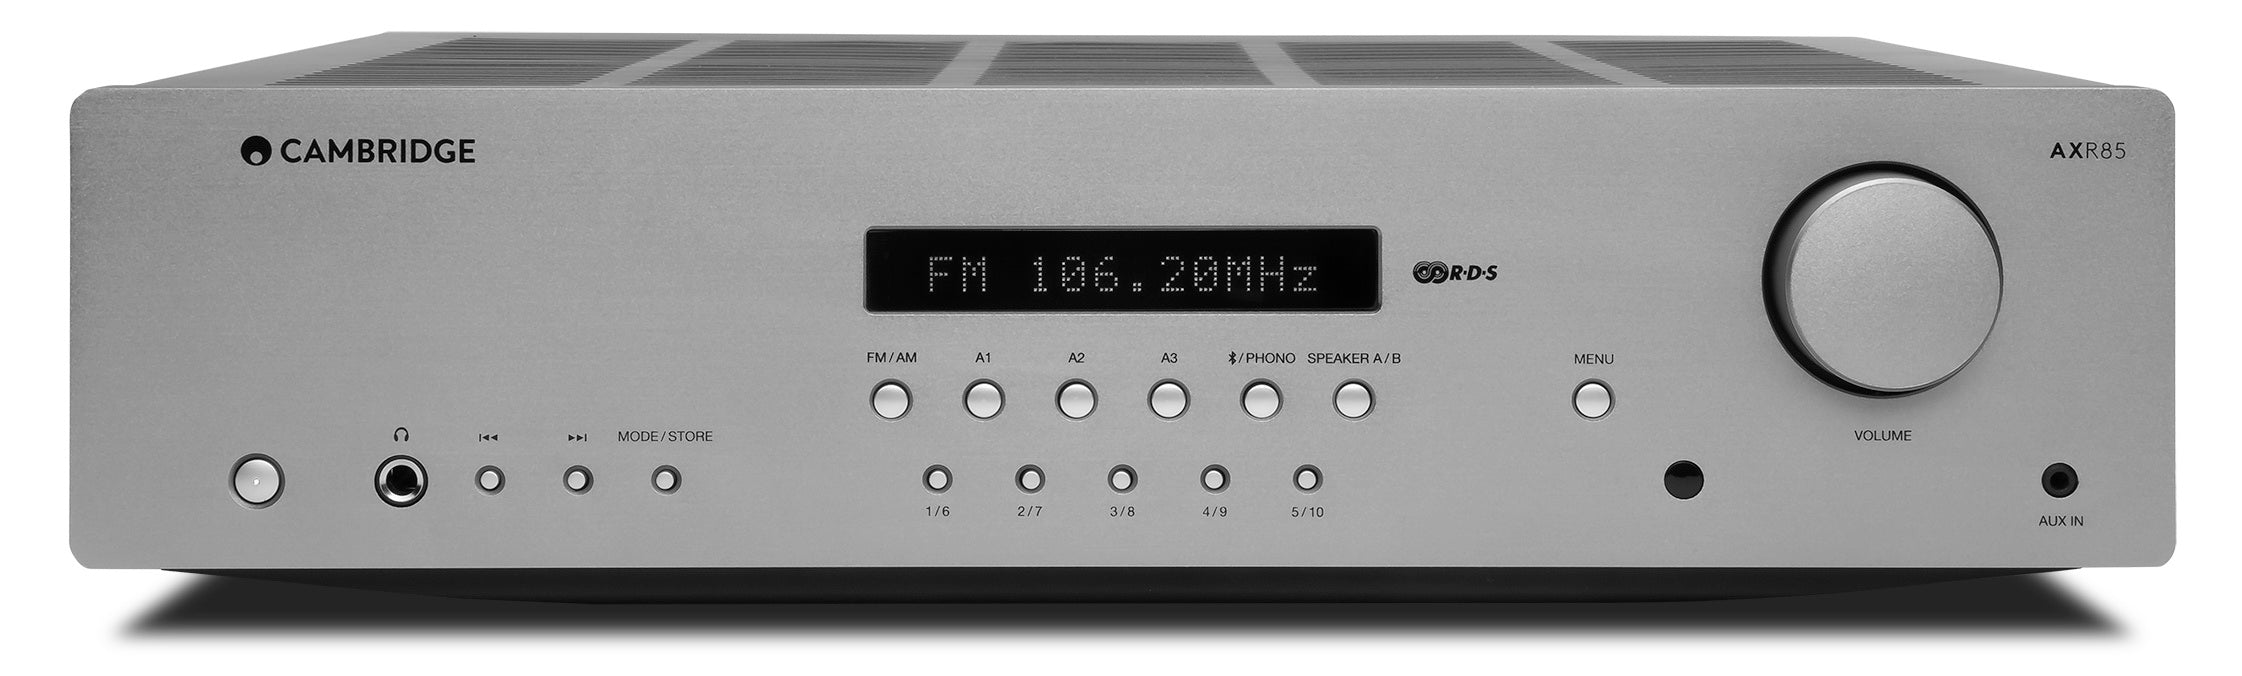 Cambridge Audio AXR85 - Récepteur stéréo AM/FM 85W/Canal